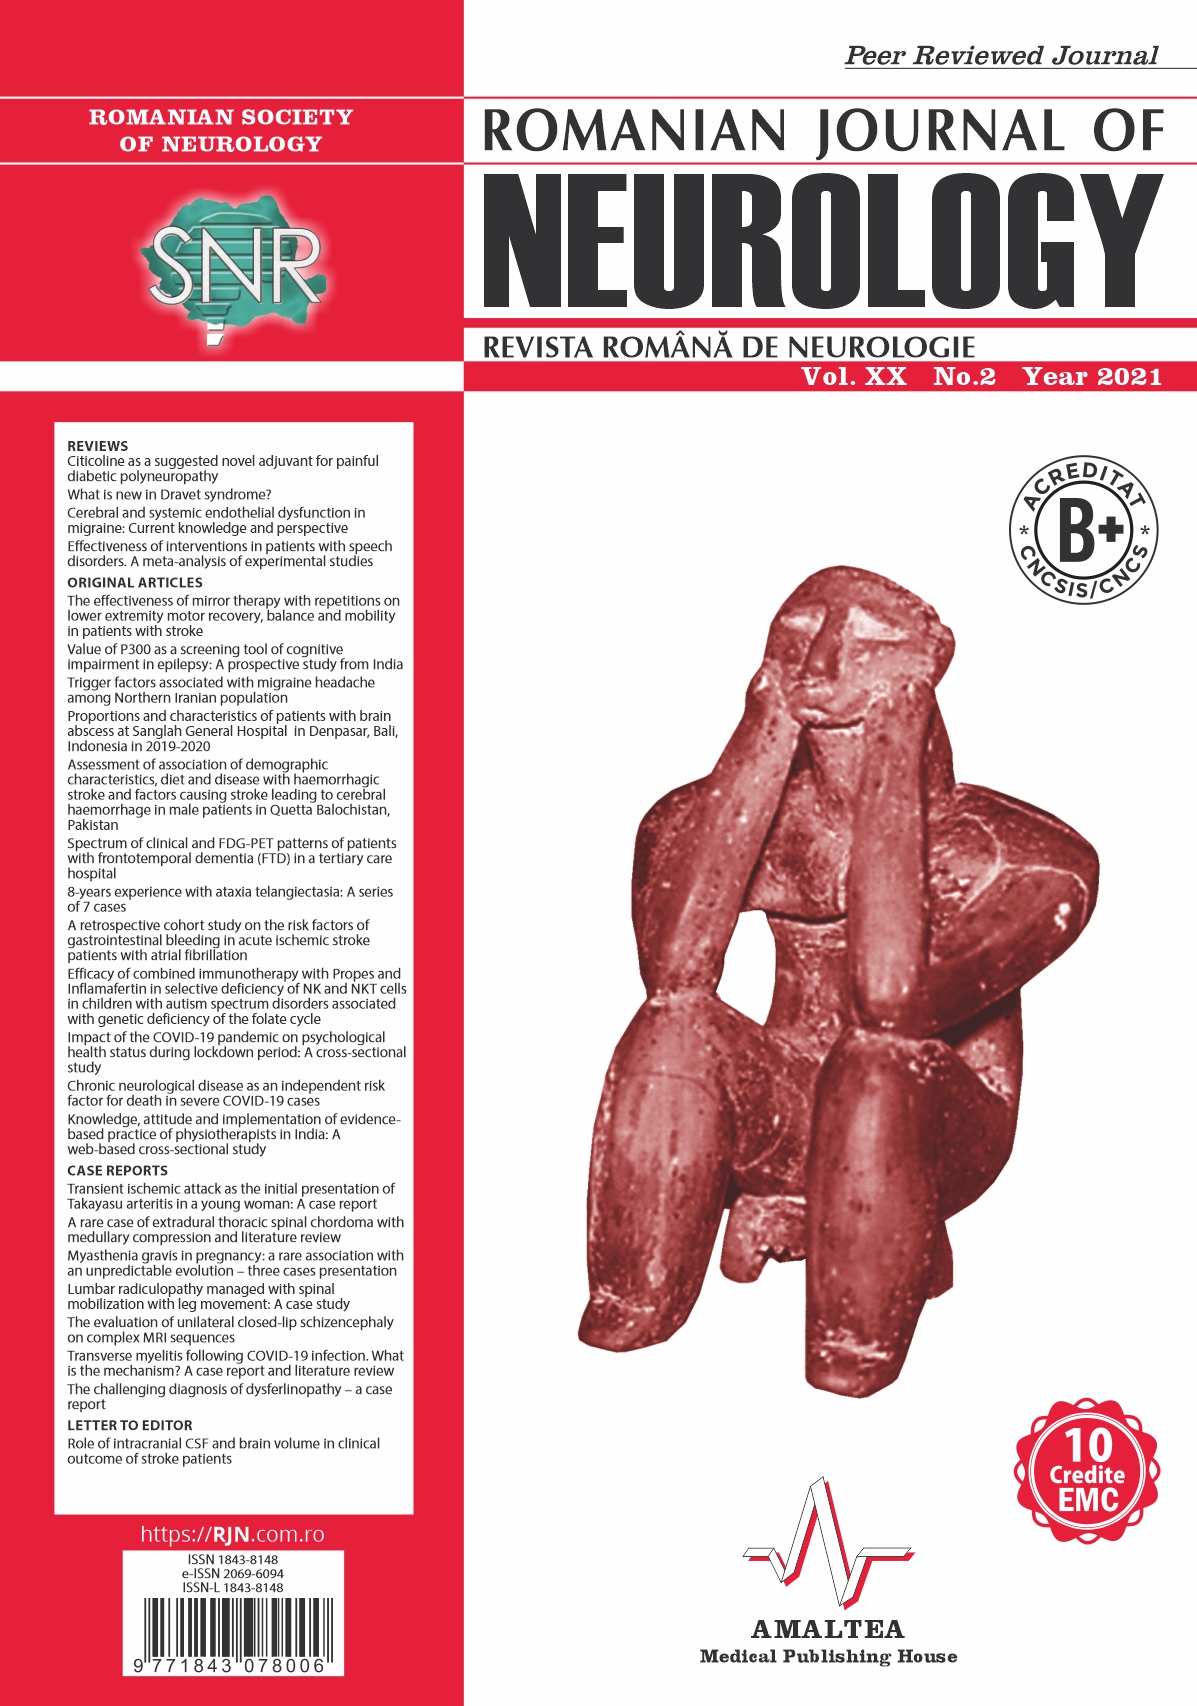 Romanian Journal of Neurology, Volume XX, No. 2, 2021